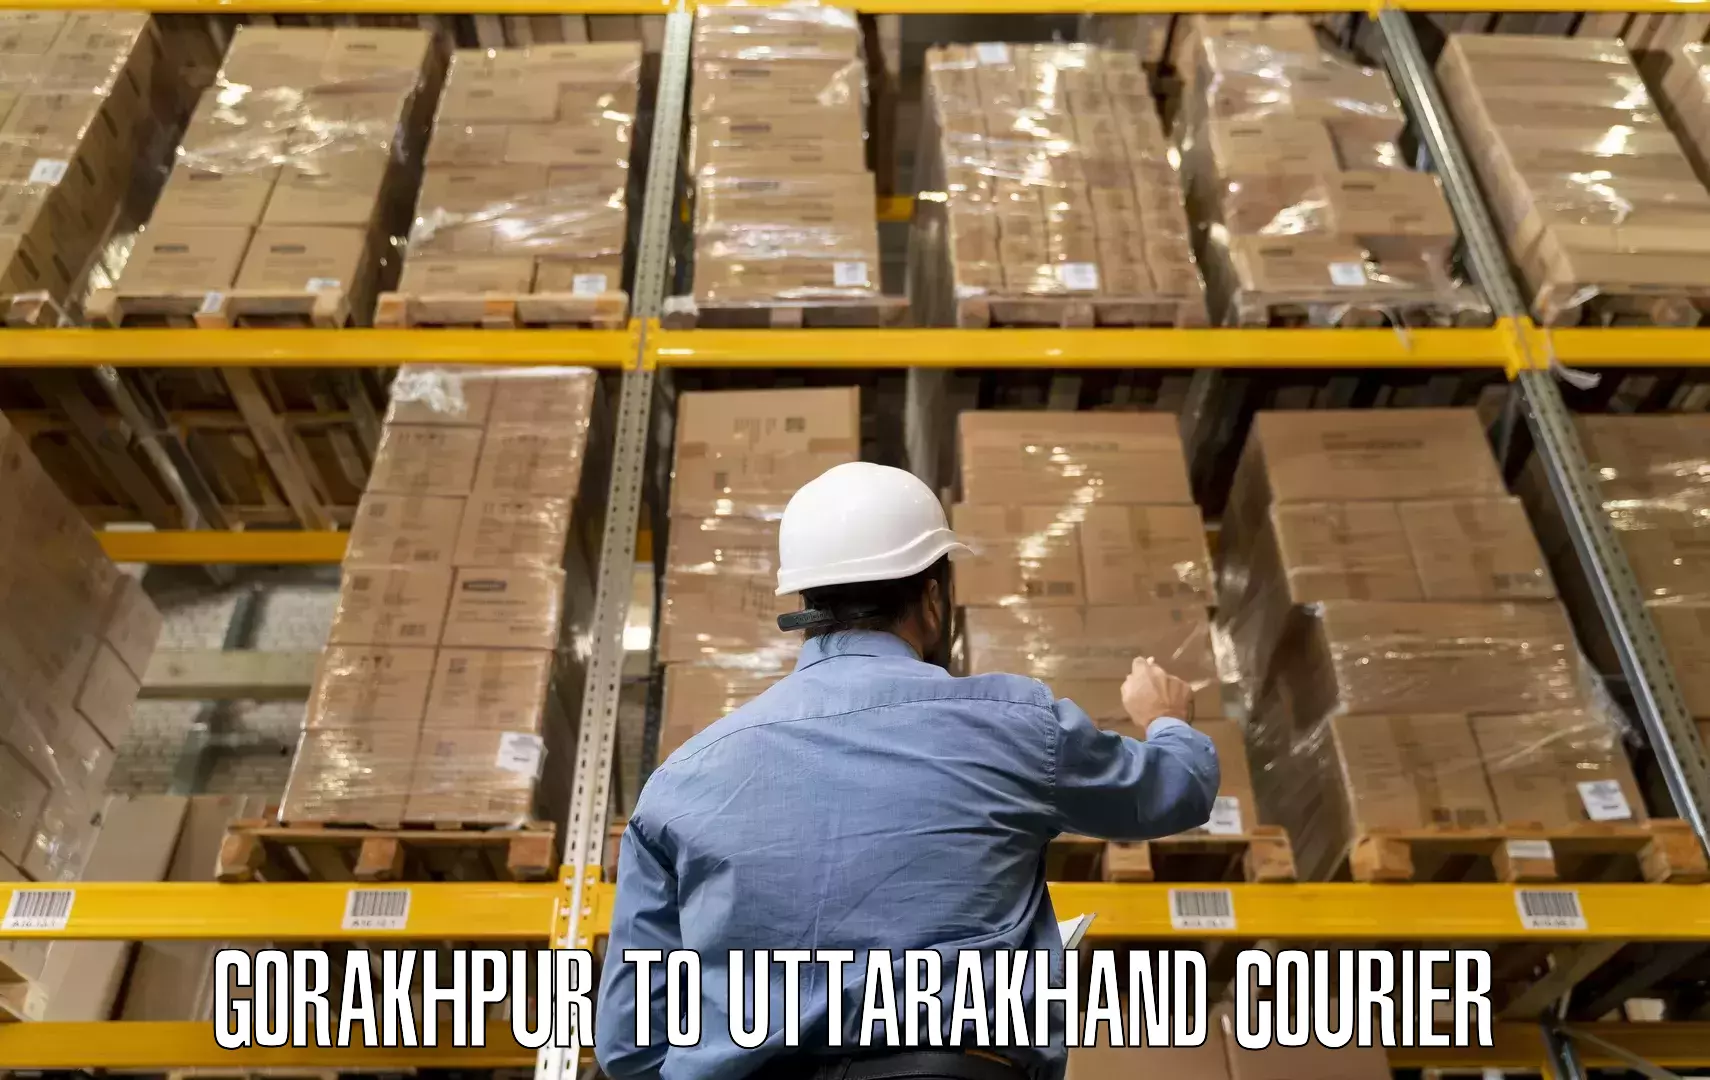 Trusted moving company Gorakhpur to Khatima